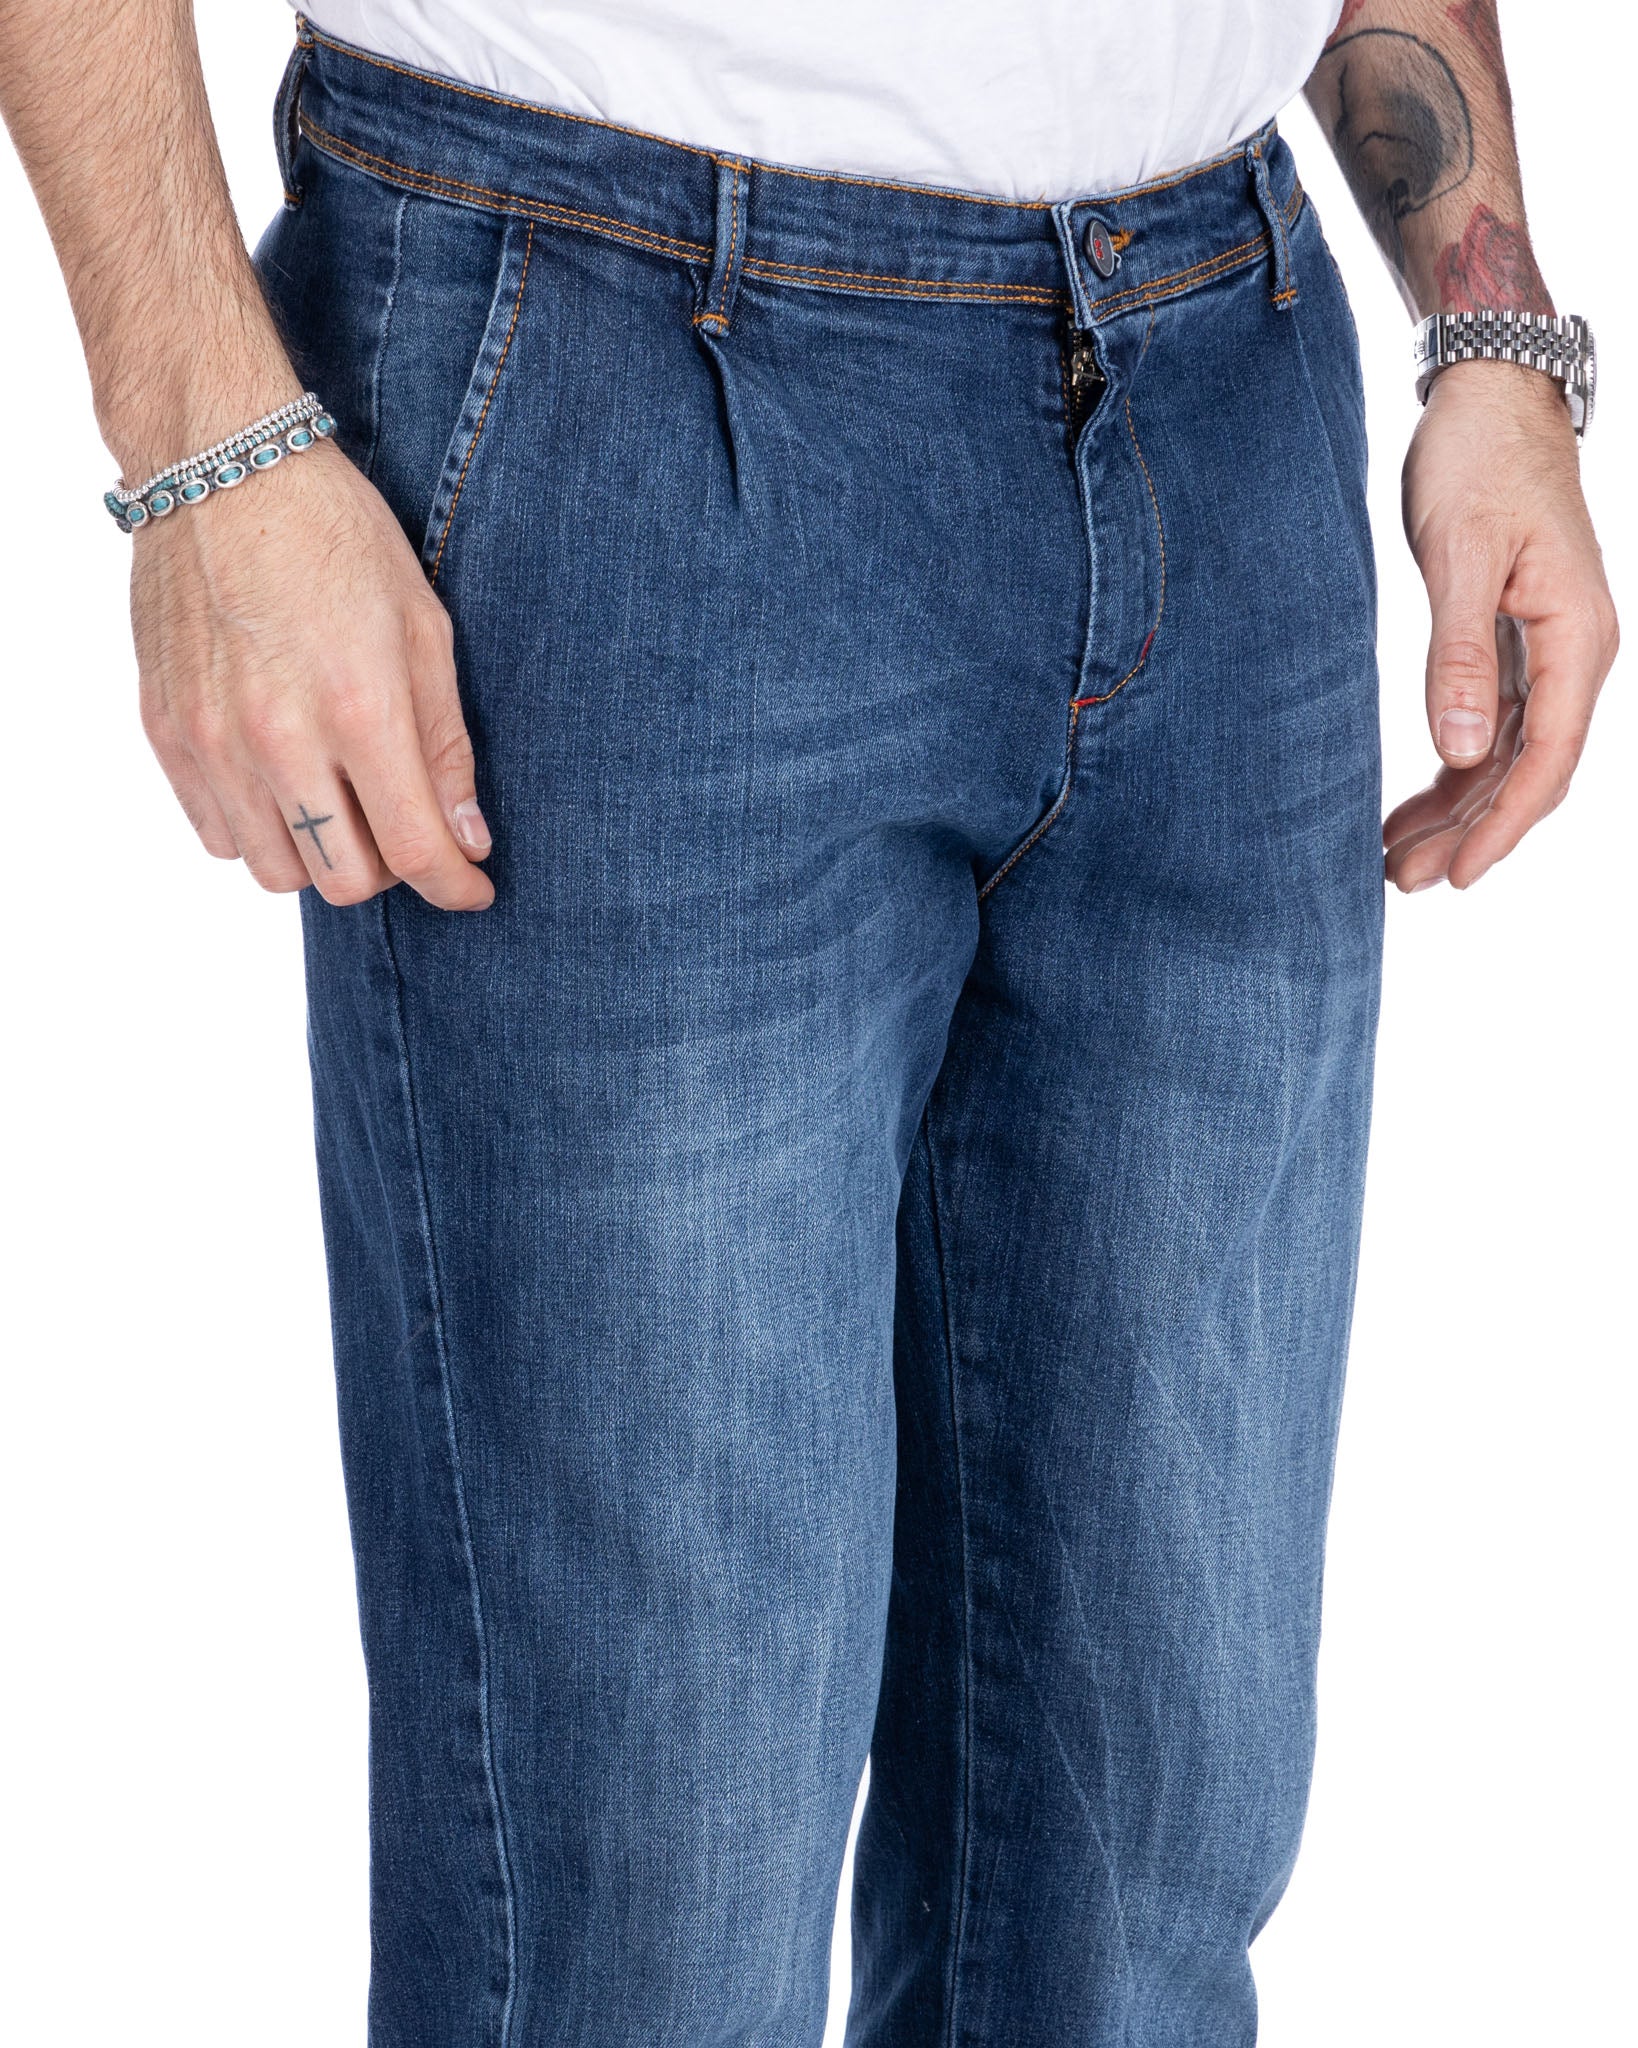 Orleans - jeans tasca america lavaggio medio